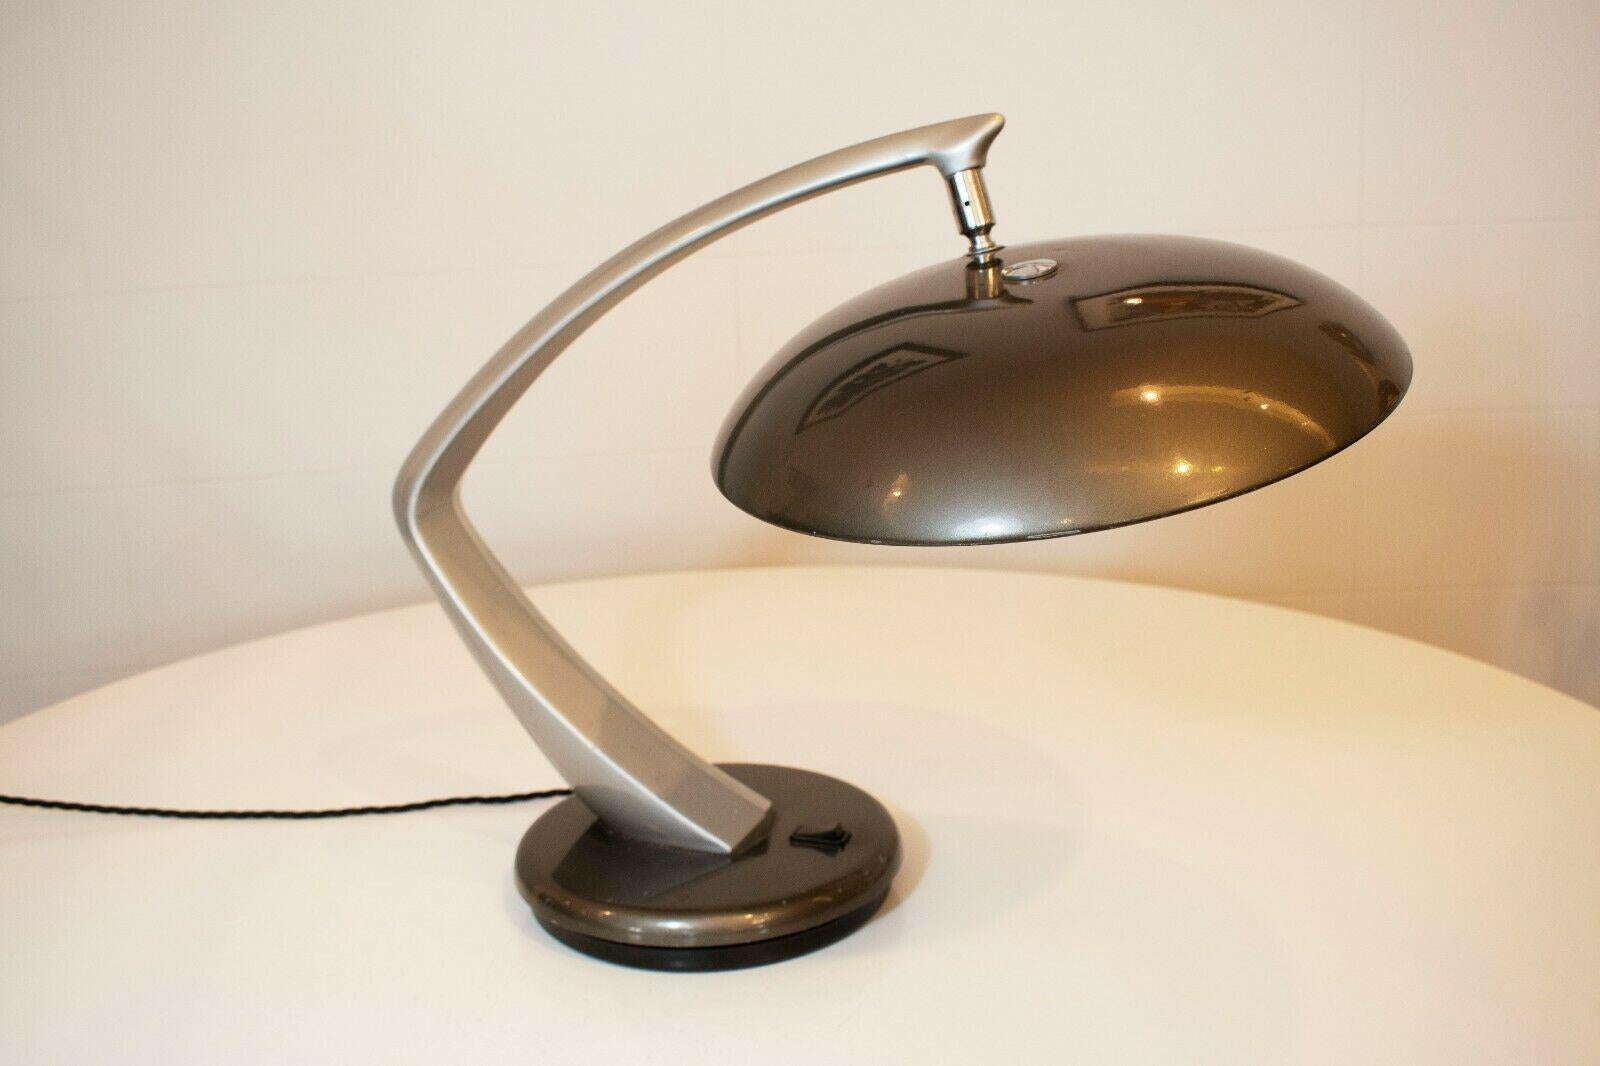 Lampe de bureau pivotante boomerang super cool et élégante fabriquée en Espagne par Fase dans les années 1970, de couleur gris clair/argent.

Cette lampe emblématique, conçue dans le style de l'ère spatiale, a été utilisée dans de nombreux films